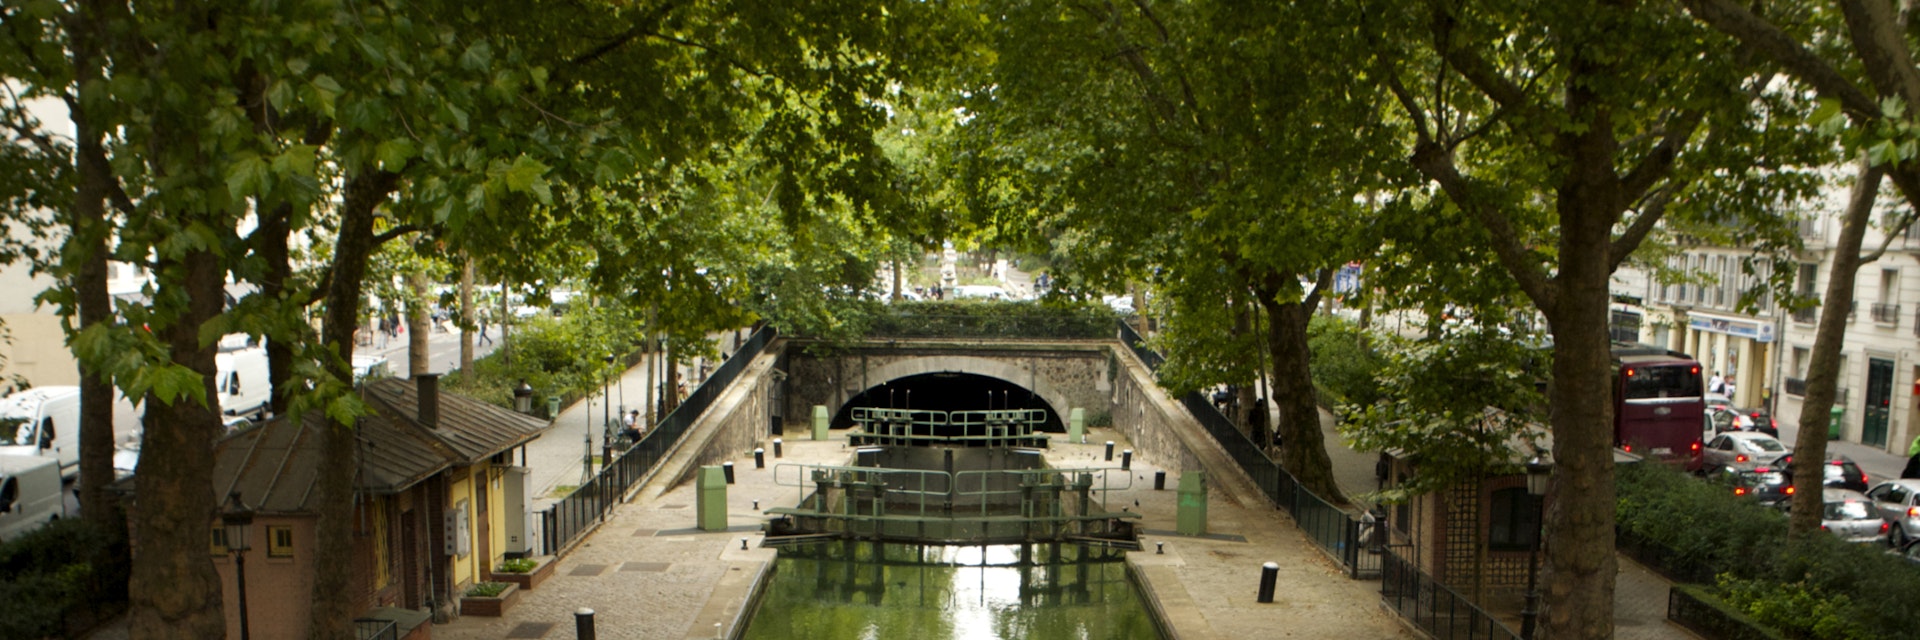 Canal Saint Martin, Republique.